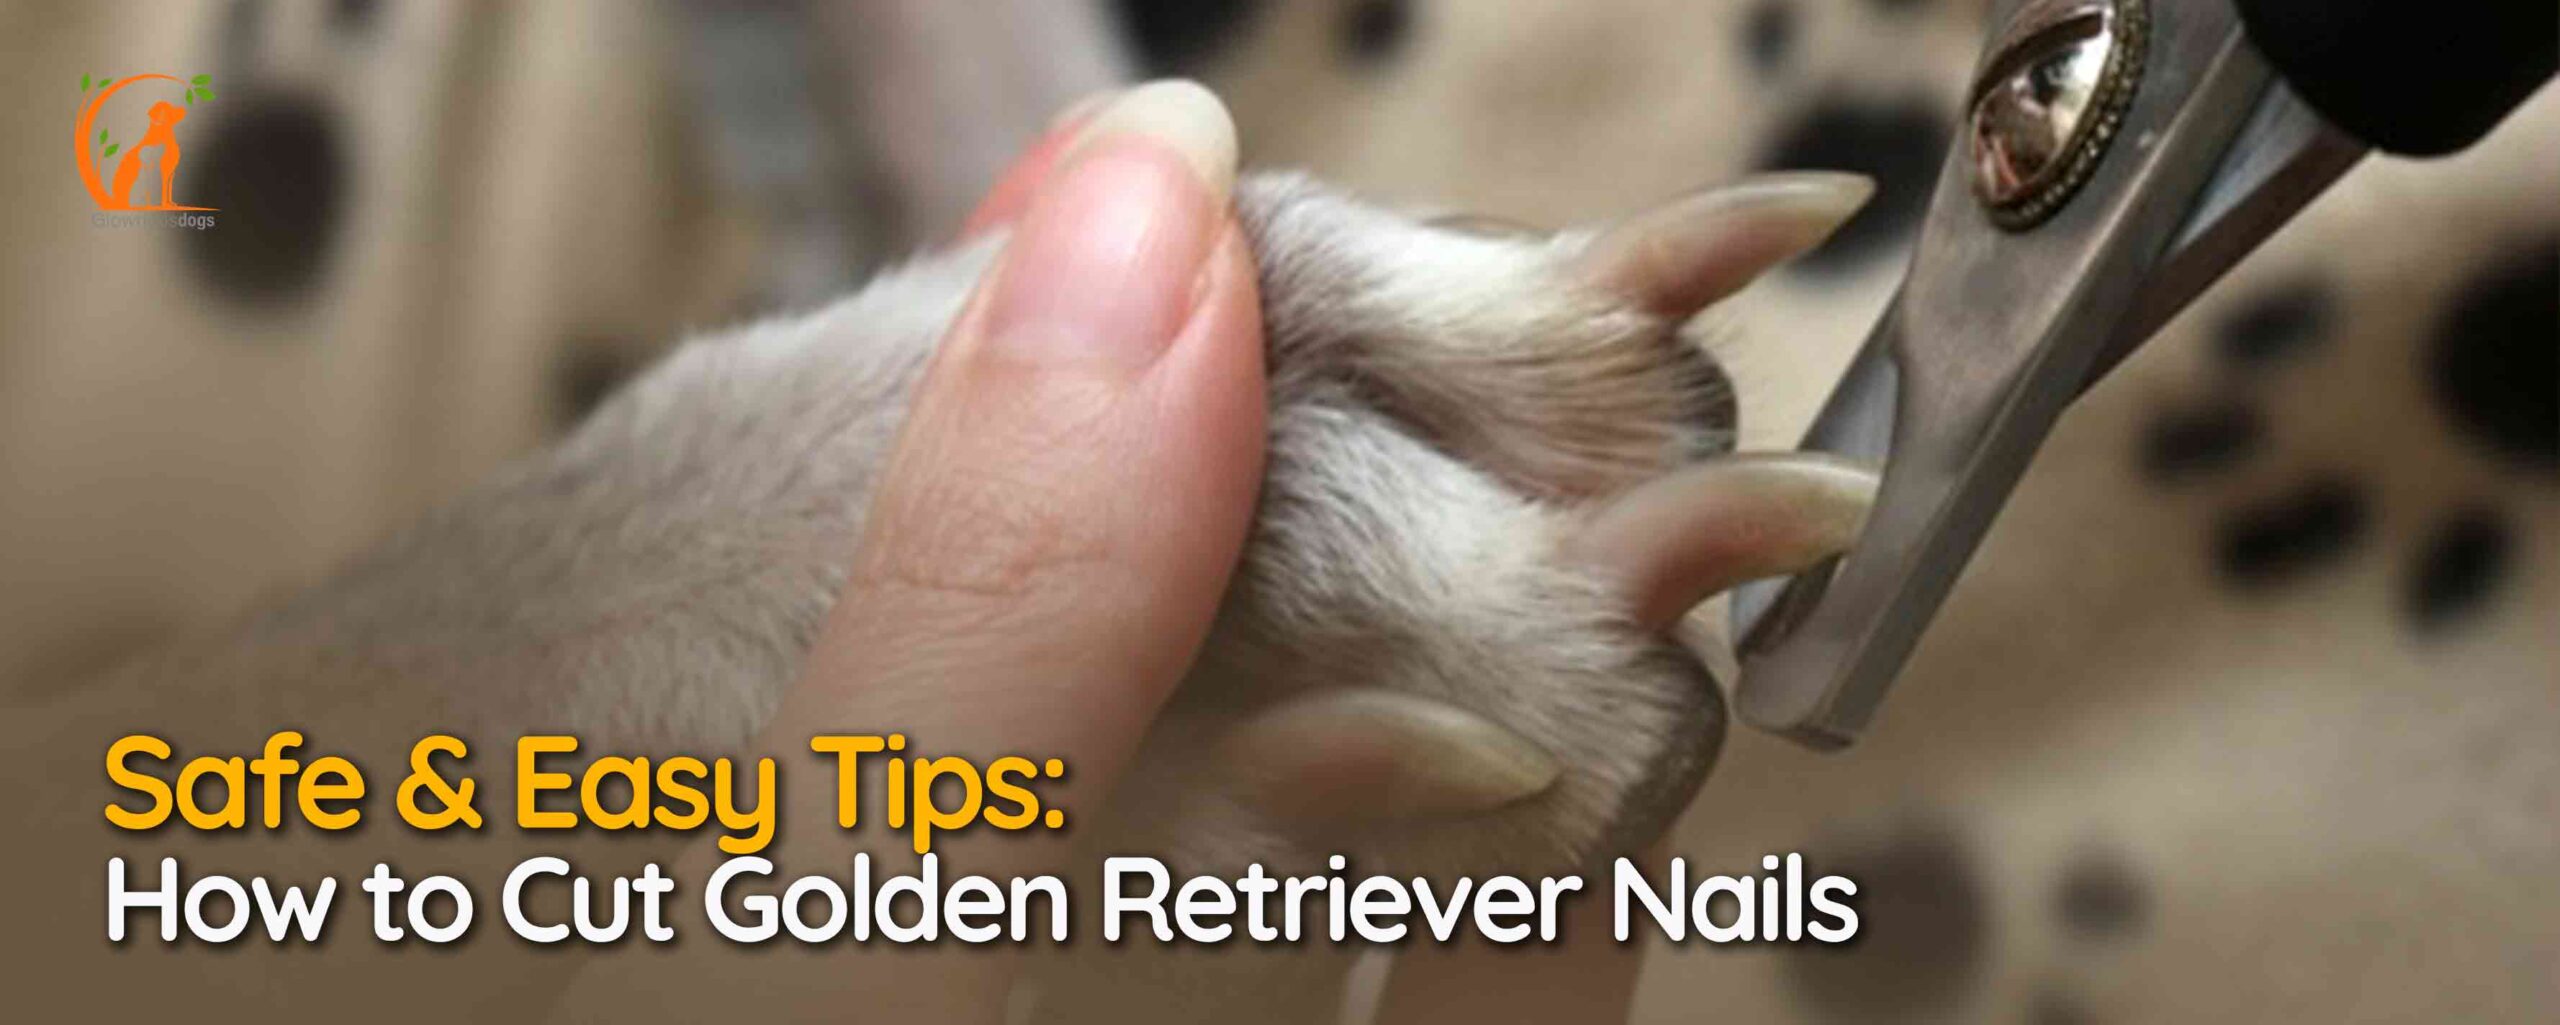 Golden Retriever Nails